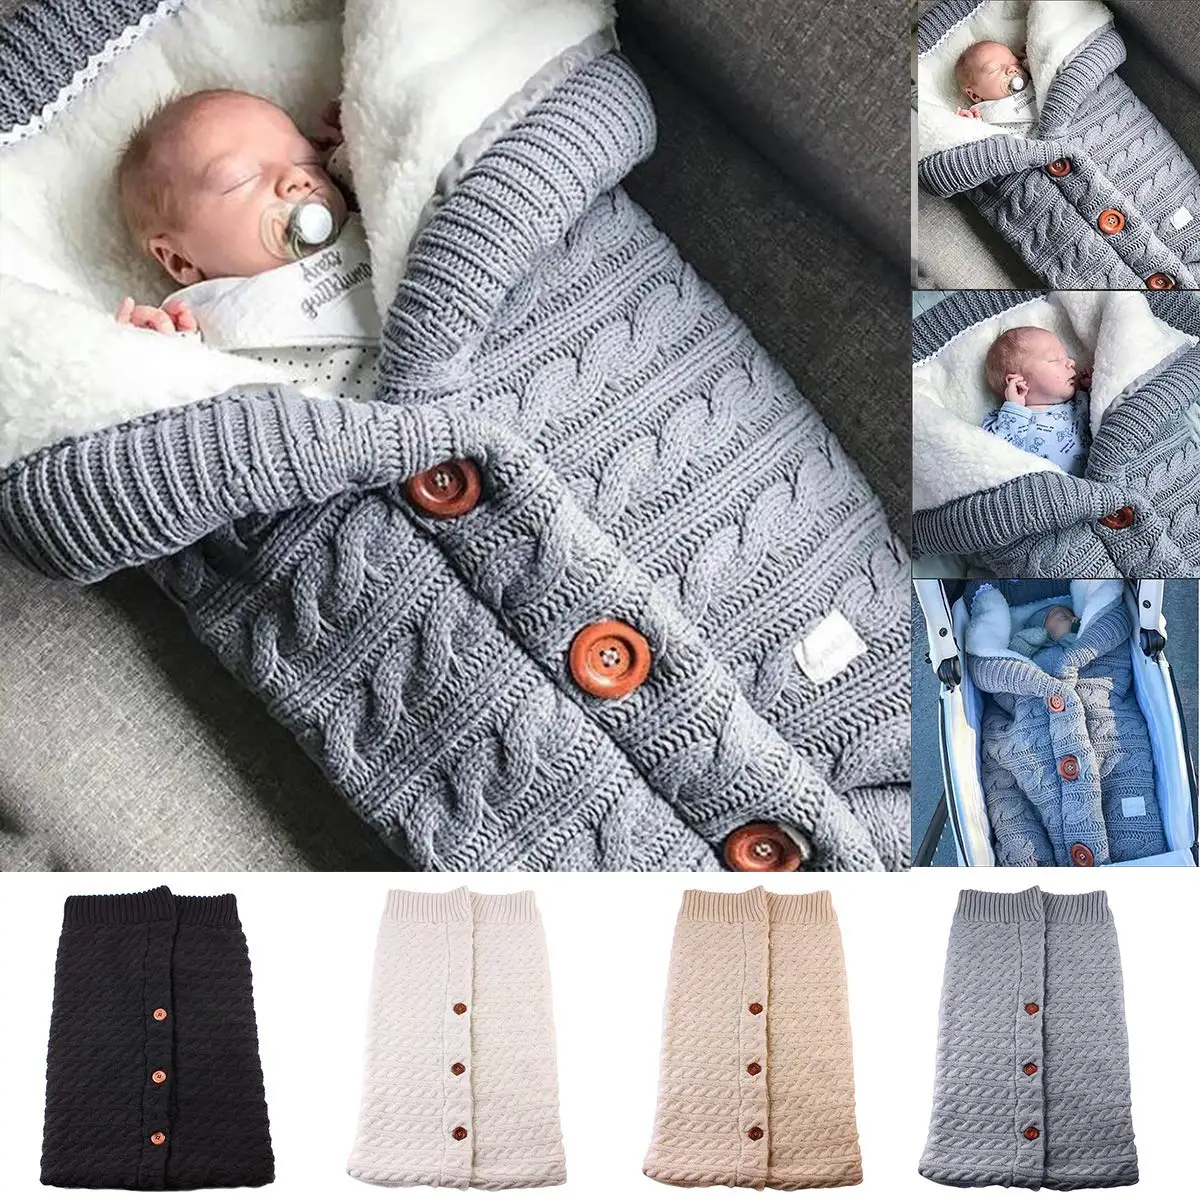 Зимние теплые спальные мешки для новорожденных, вязаные пеленки с пуговицами для завёртывания для пеленания, коляска, обертывание, одеяло для сна, сумки